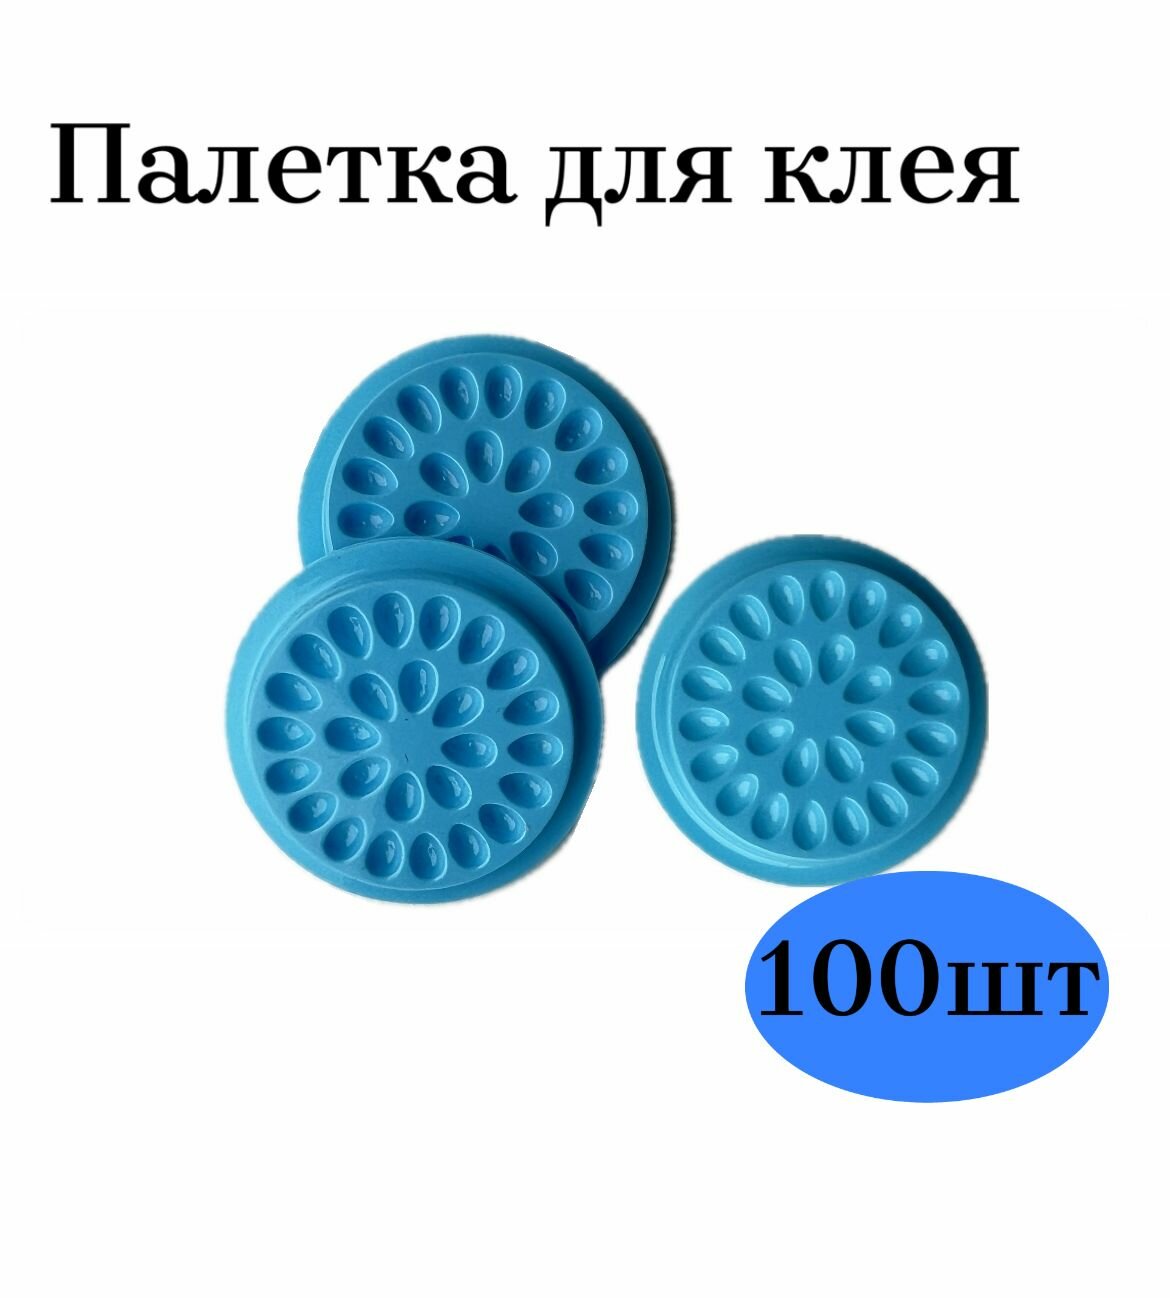 Палетки для клея 100 шт, лунки для наращивания ресниц (голубые)